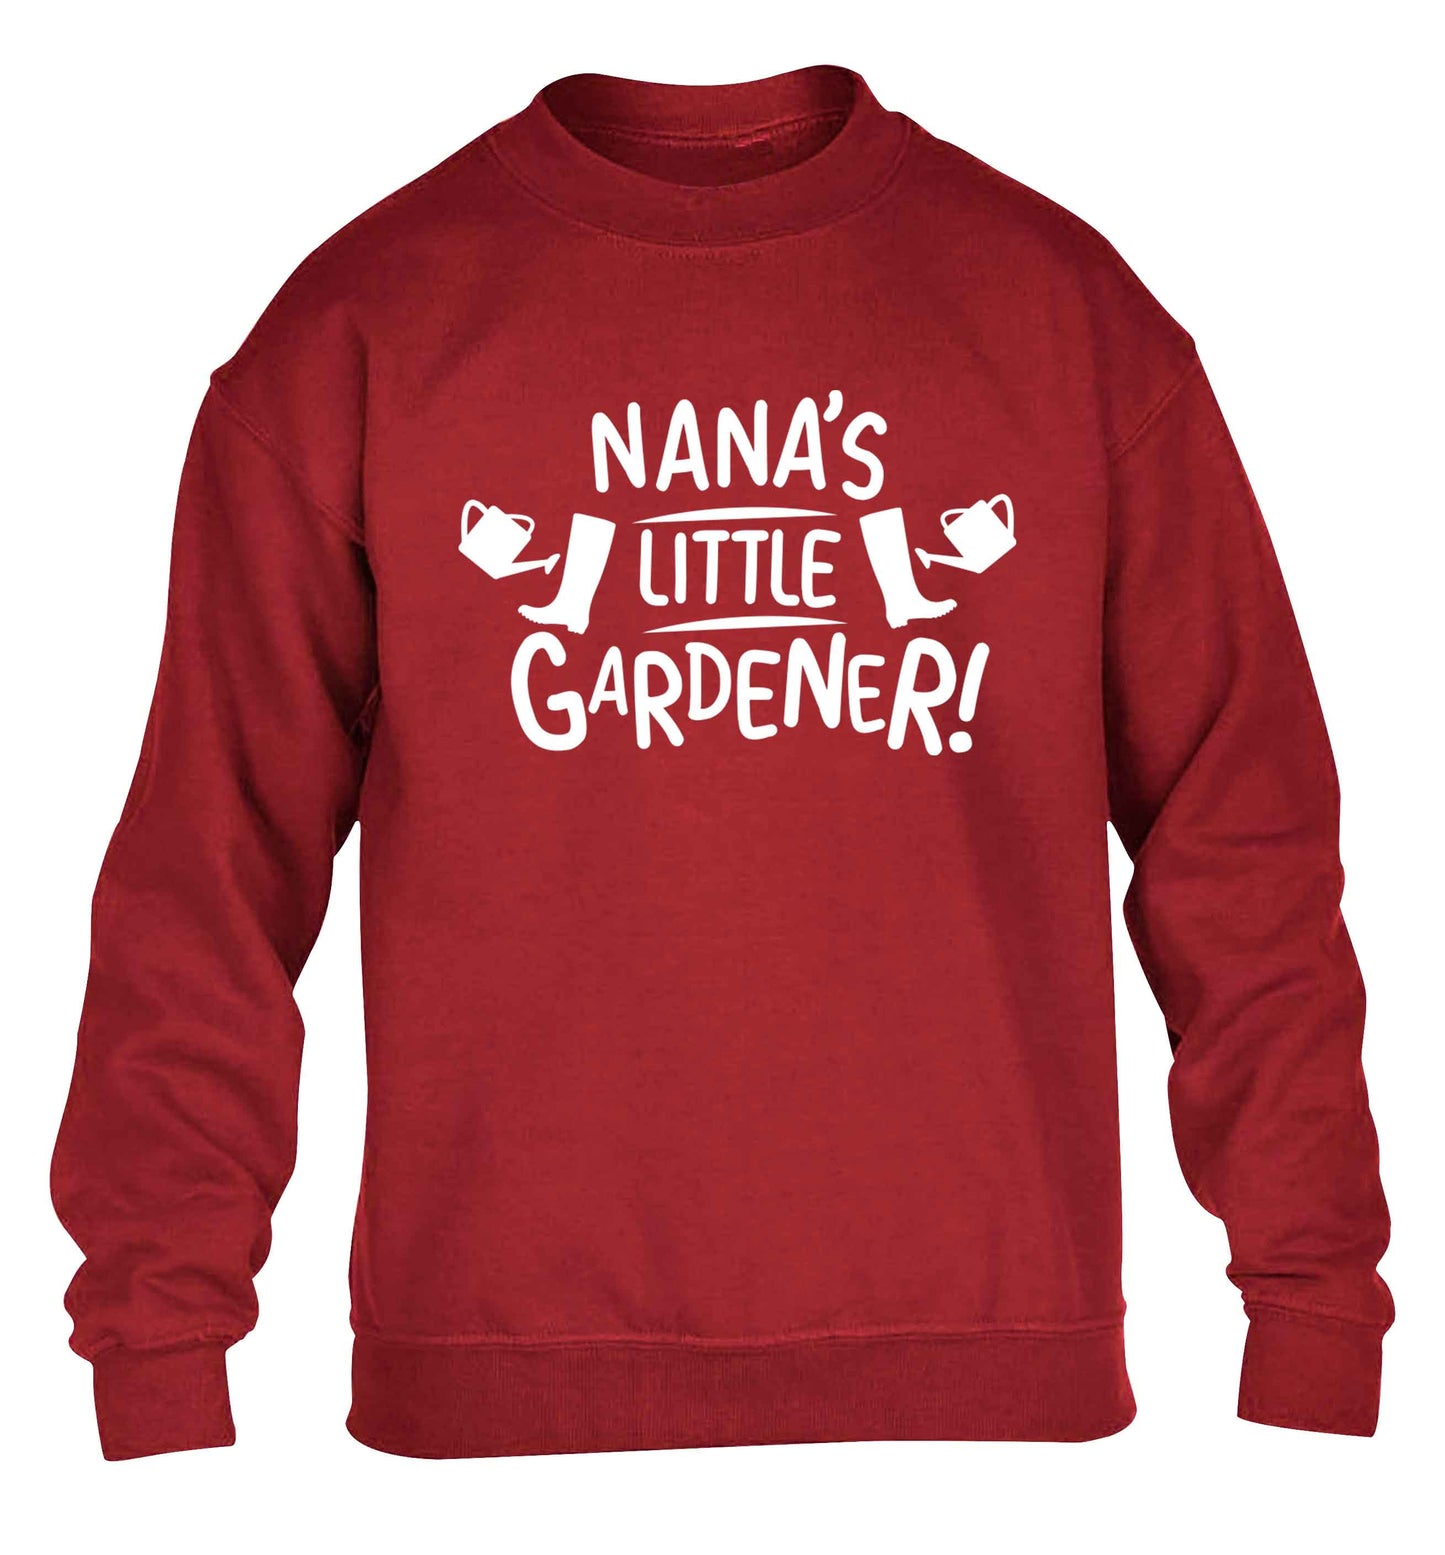 Nana's little gardener children's grey sweater 12-13 Years